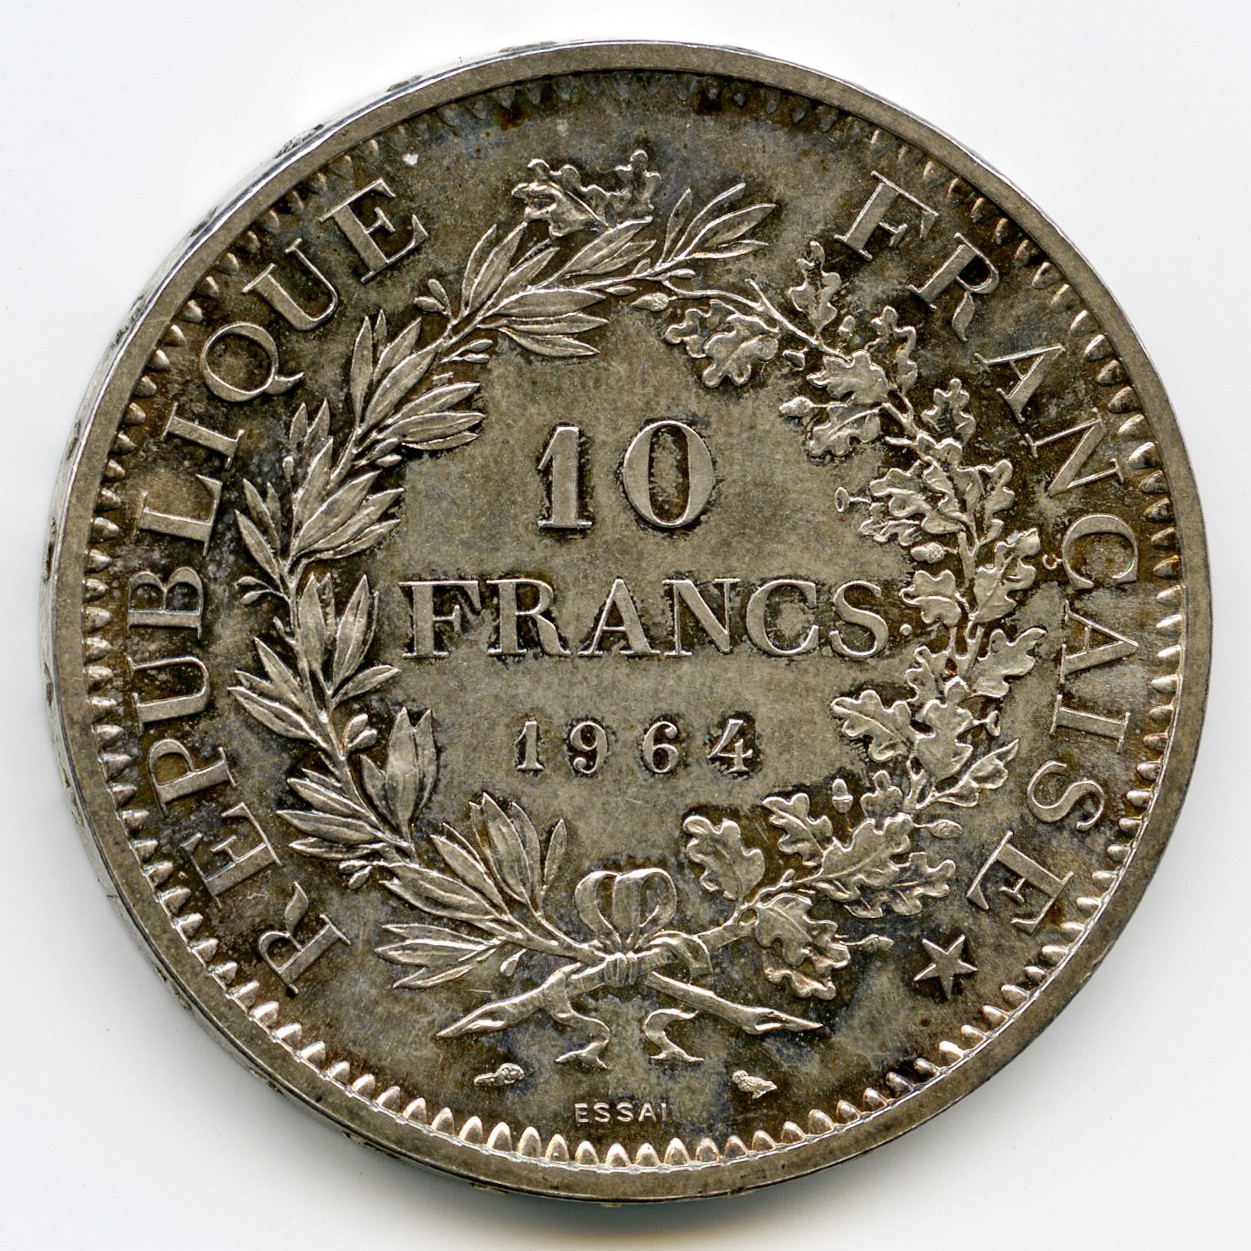 10 Francs - Essai - 1964 revers